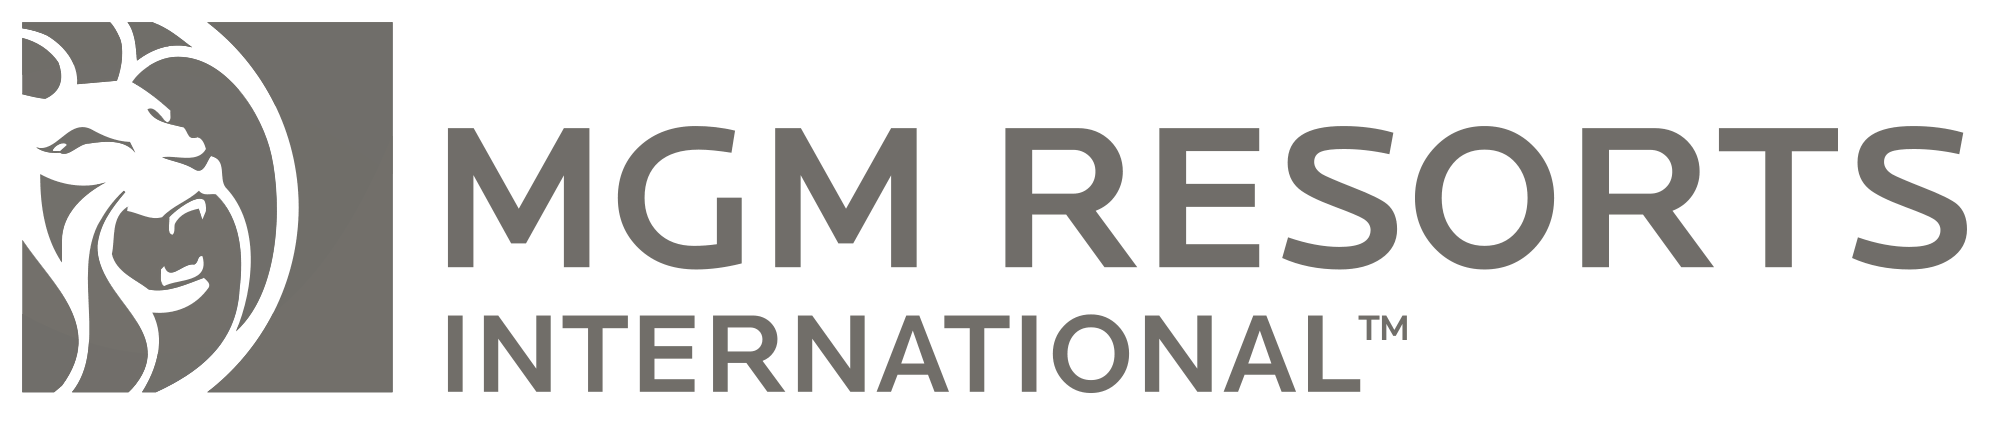 mgmresorts-international-logo-2000x422.png